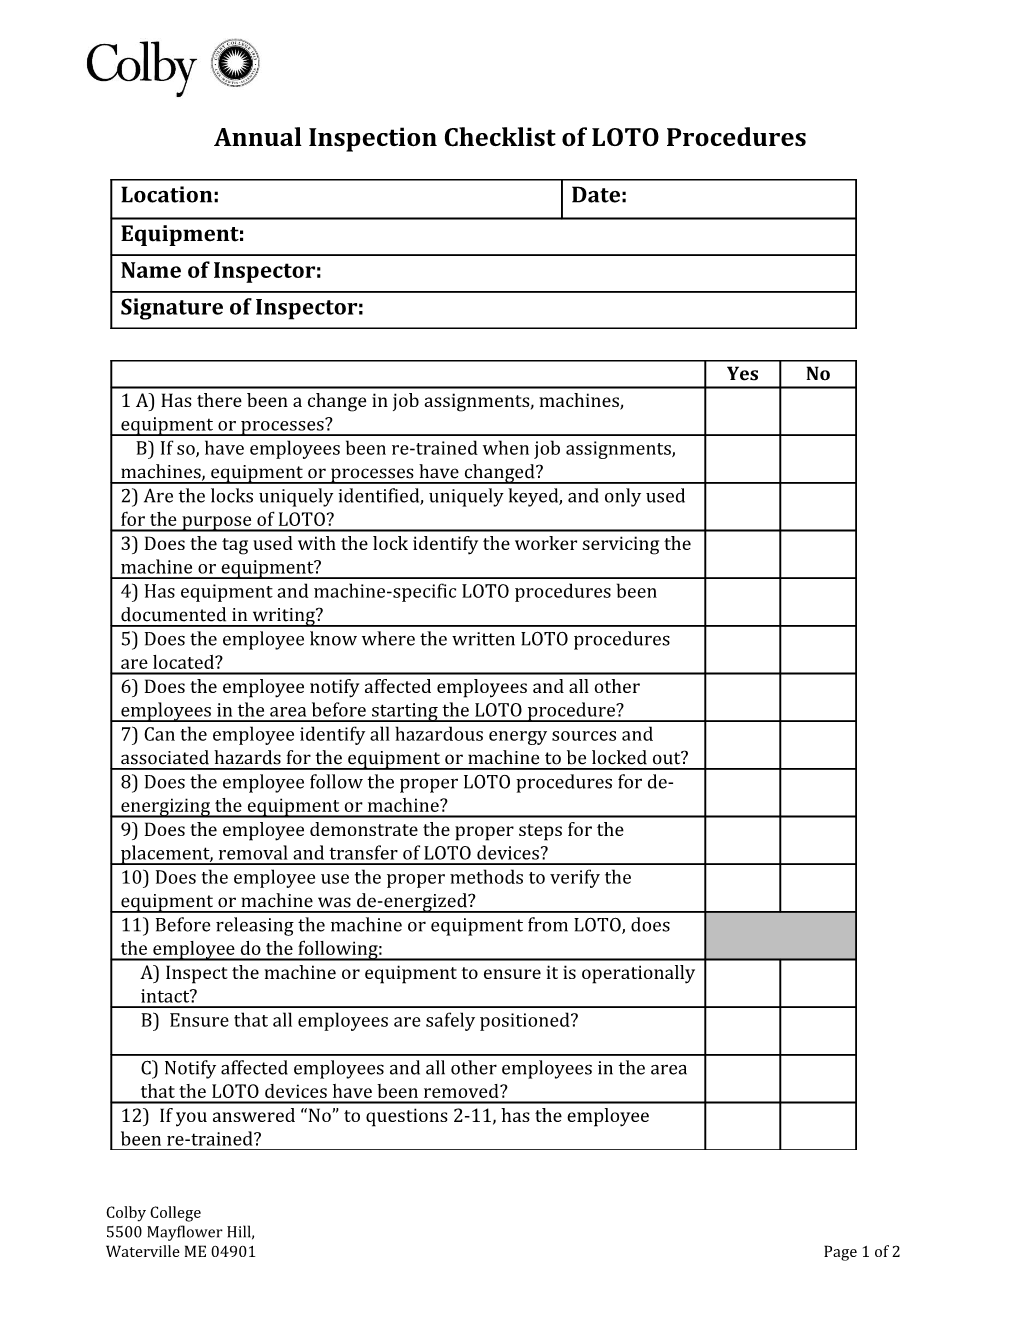 LOTO Annual Inspection Checklist